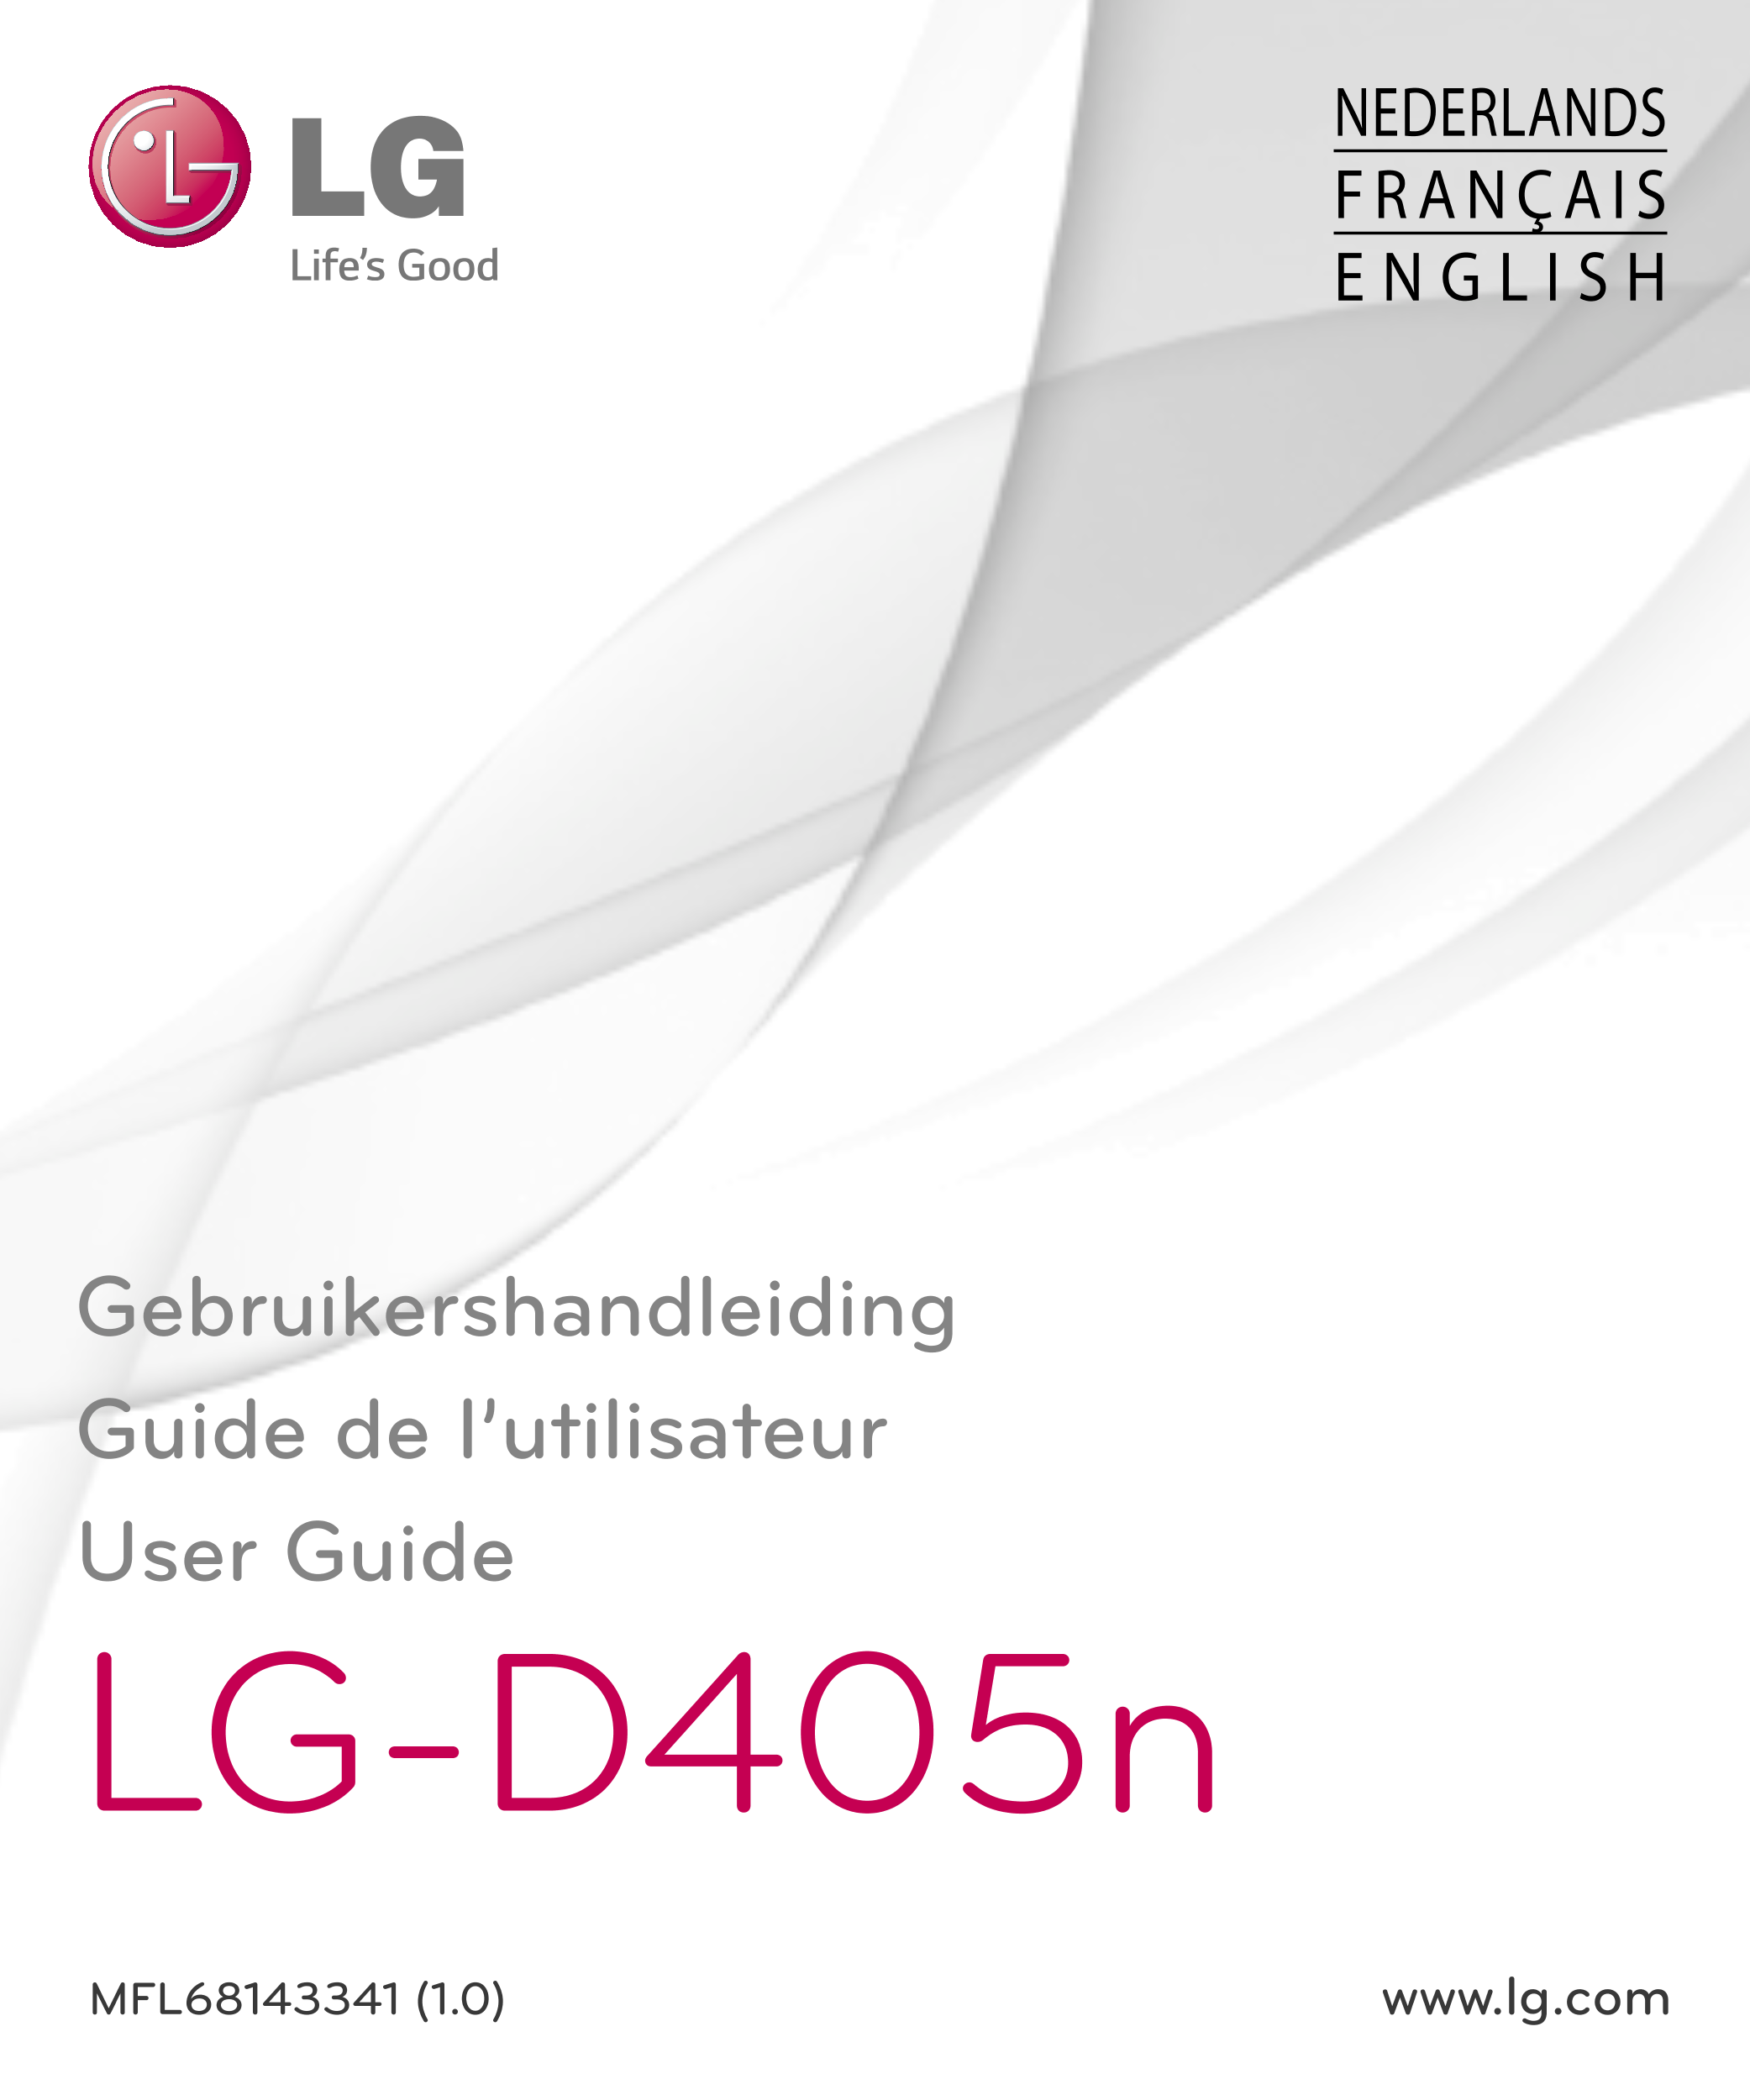 NEDERLANDS
FRANÇAIS
E N G L I S H
Gebruikershandleiding
Guide de l’utilisateur
User Guide
LG-D405n
MFL68143341 (1.0)  www.lg.com